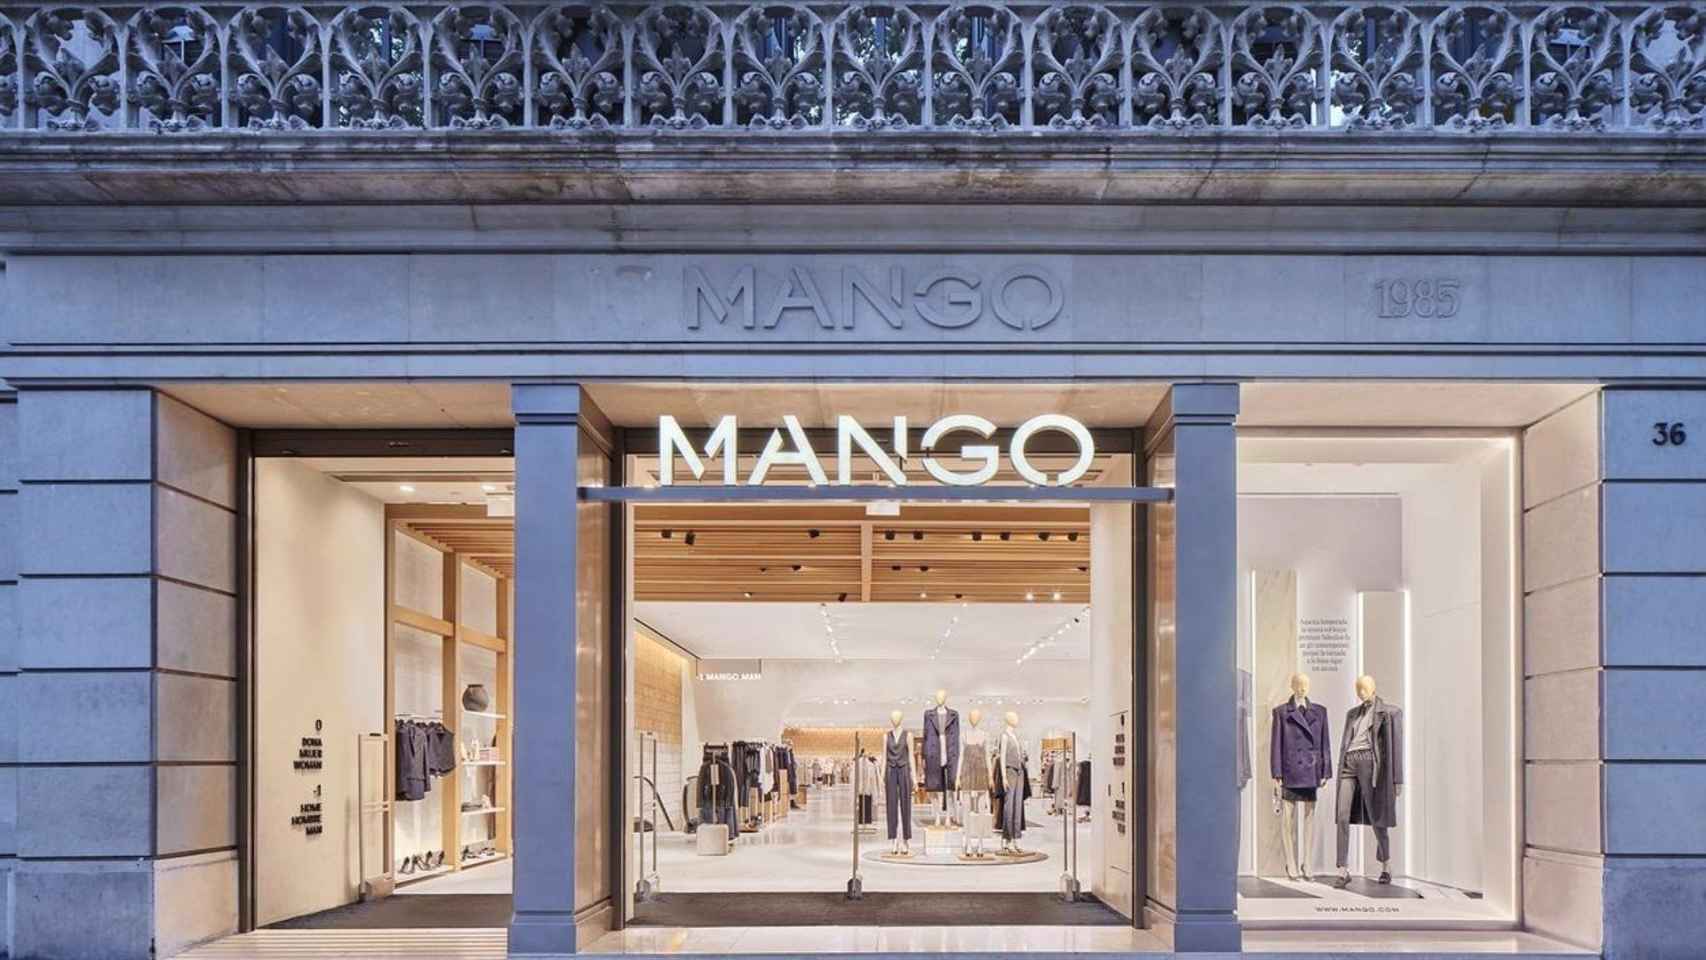 Tienda Mango en una imagen de archivo / EUROPA PRESS